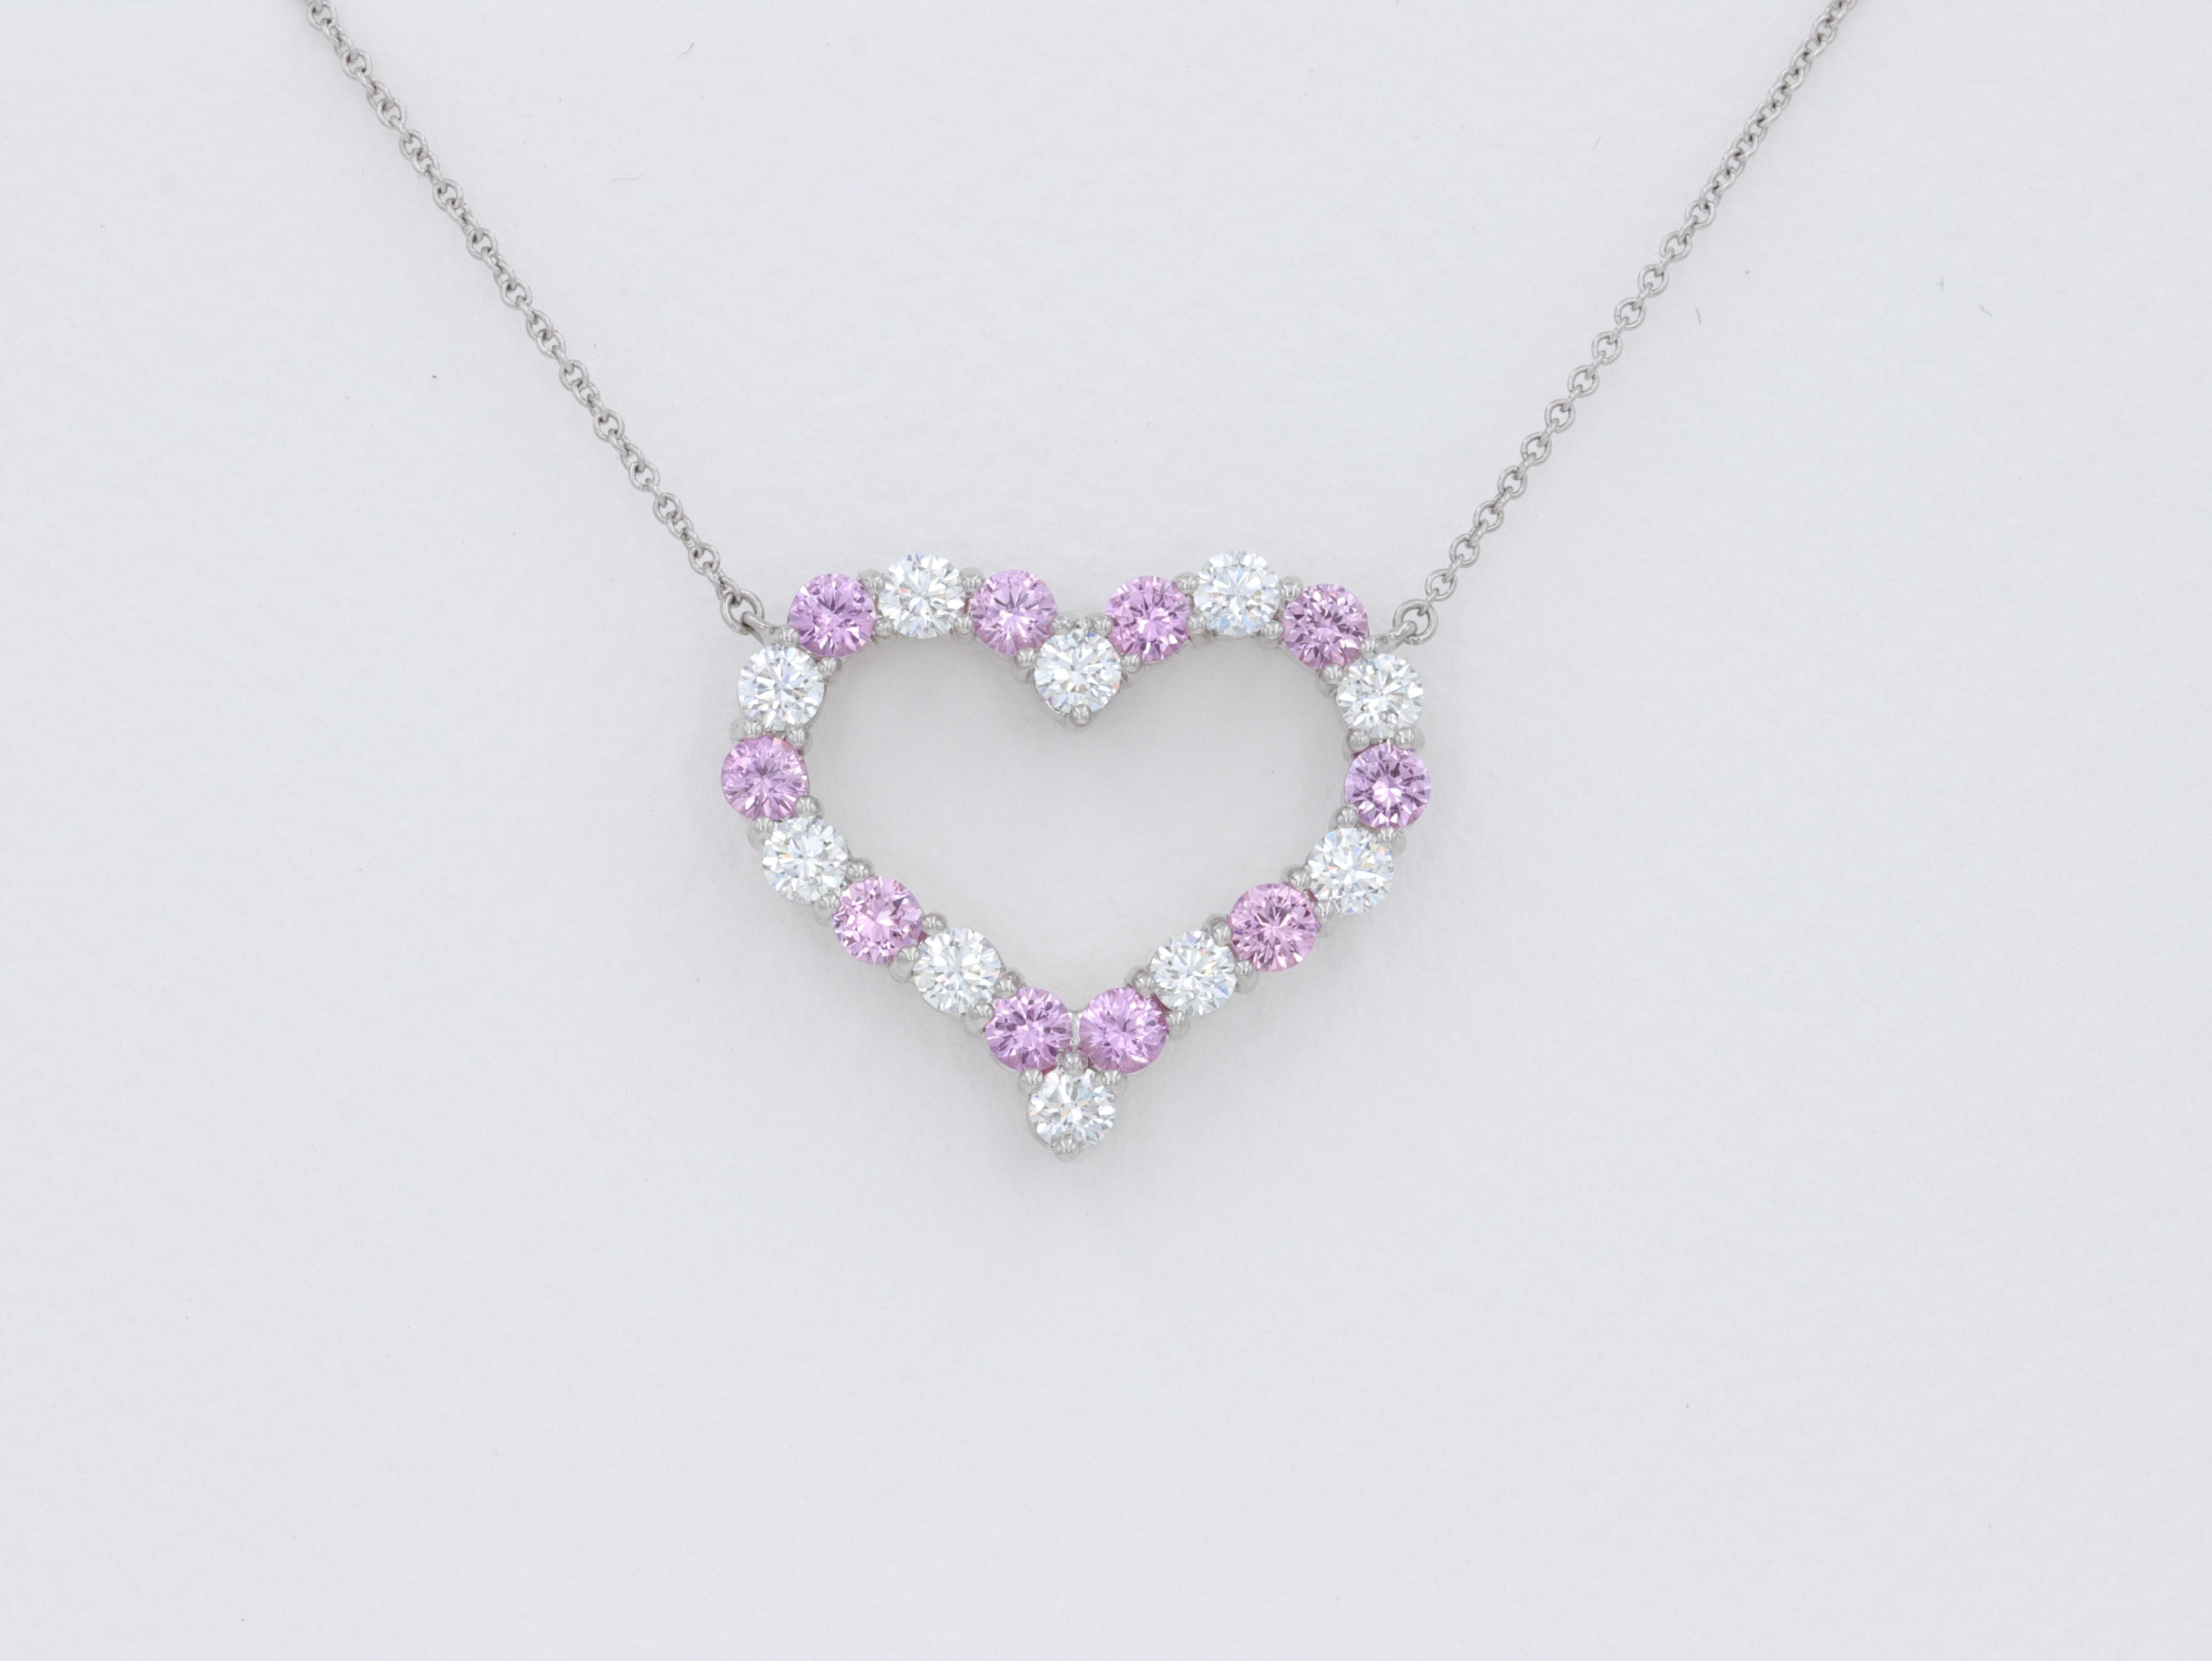 Grand modèle Tiffany & Co. Collier pendentif en forme de cœur en saphir rose et diamant, composé de diamants ronds de taille fine et de saphirs roses de taille ronde, sertis en platine. 

Les diamants pèsent environ 1 carat au total et sont de belle